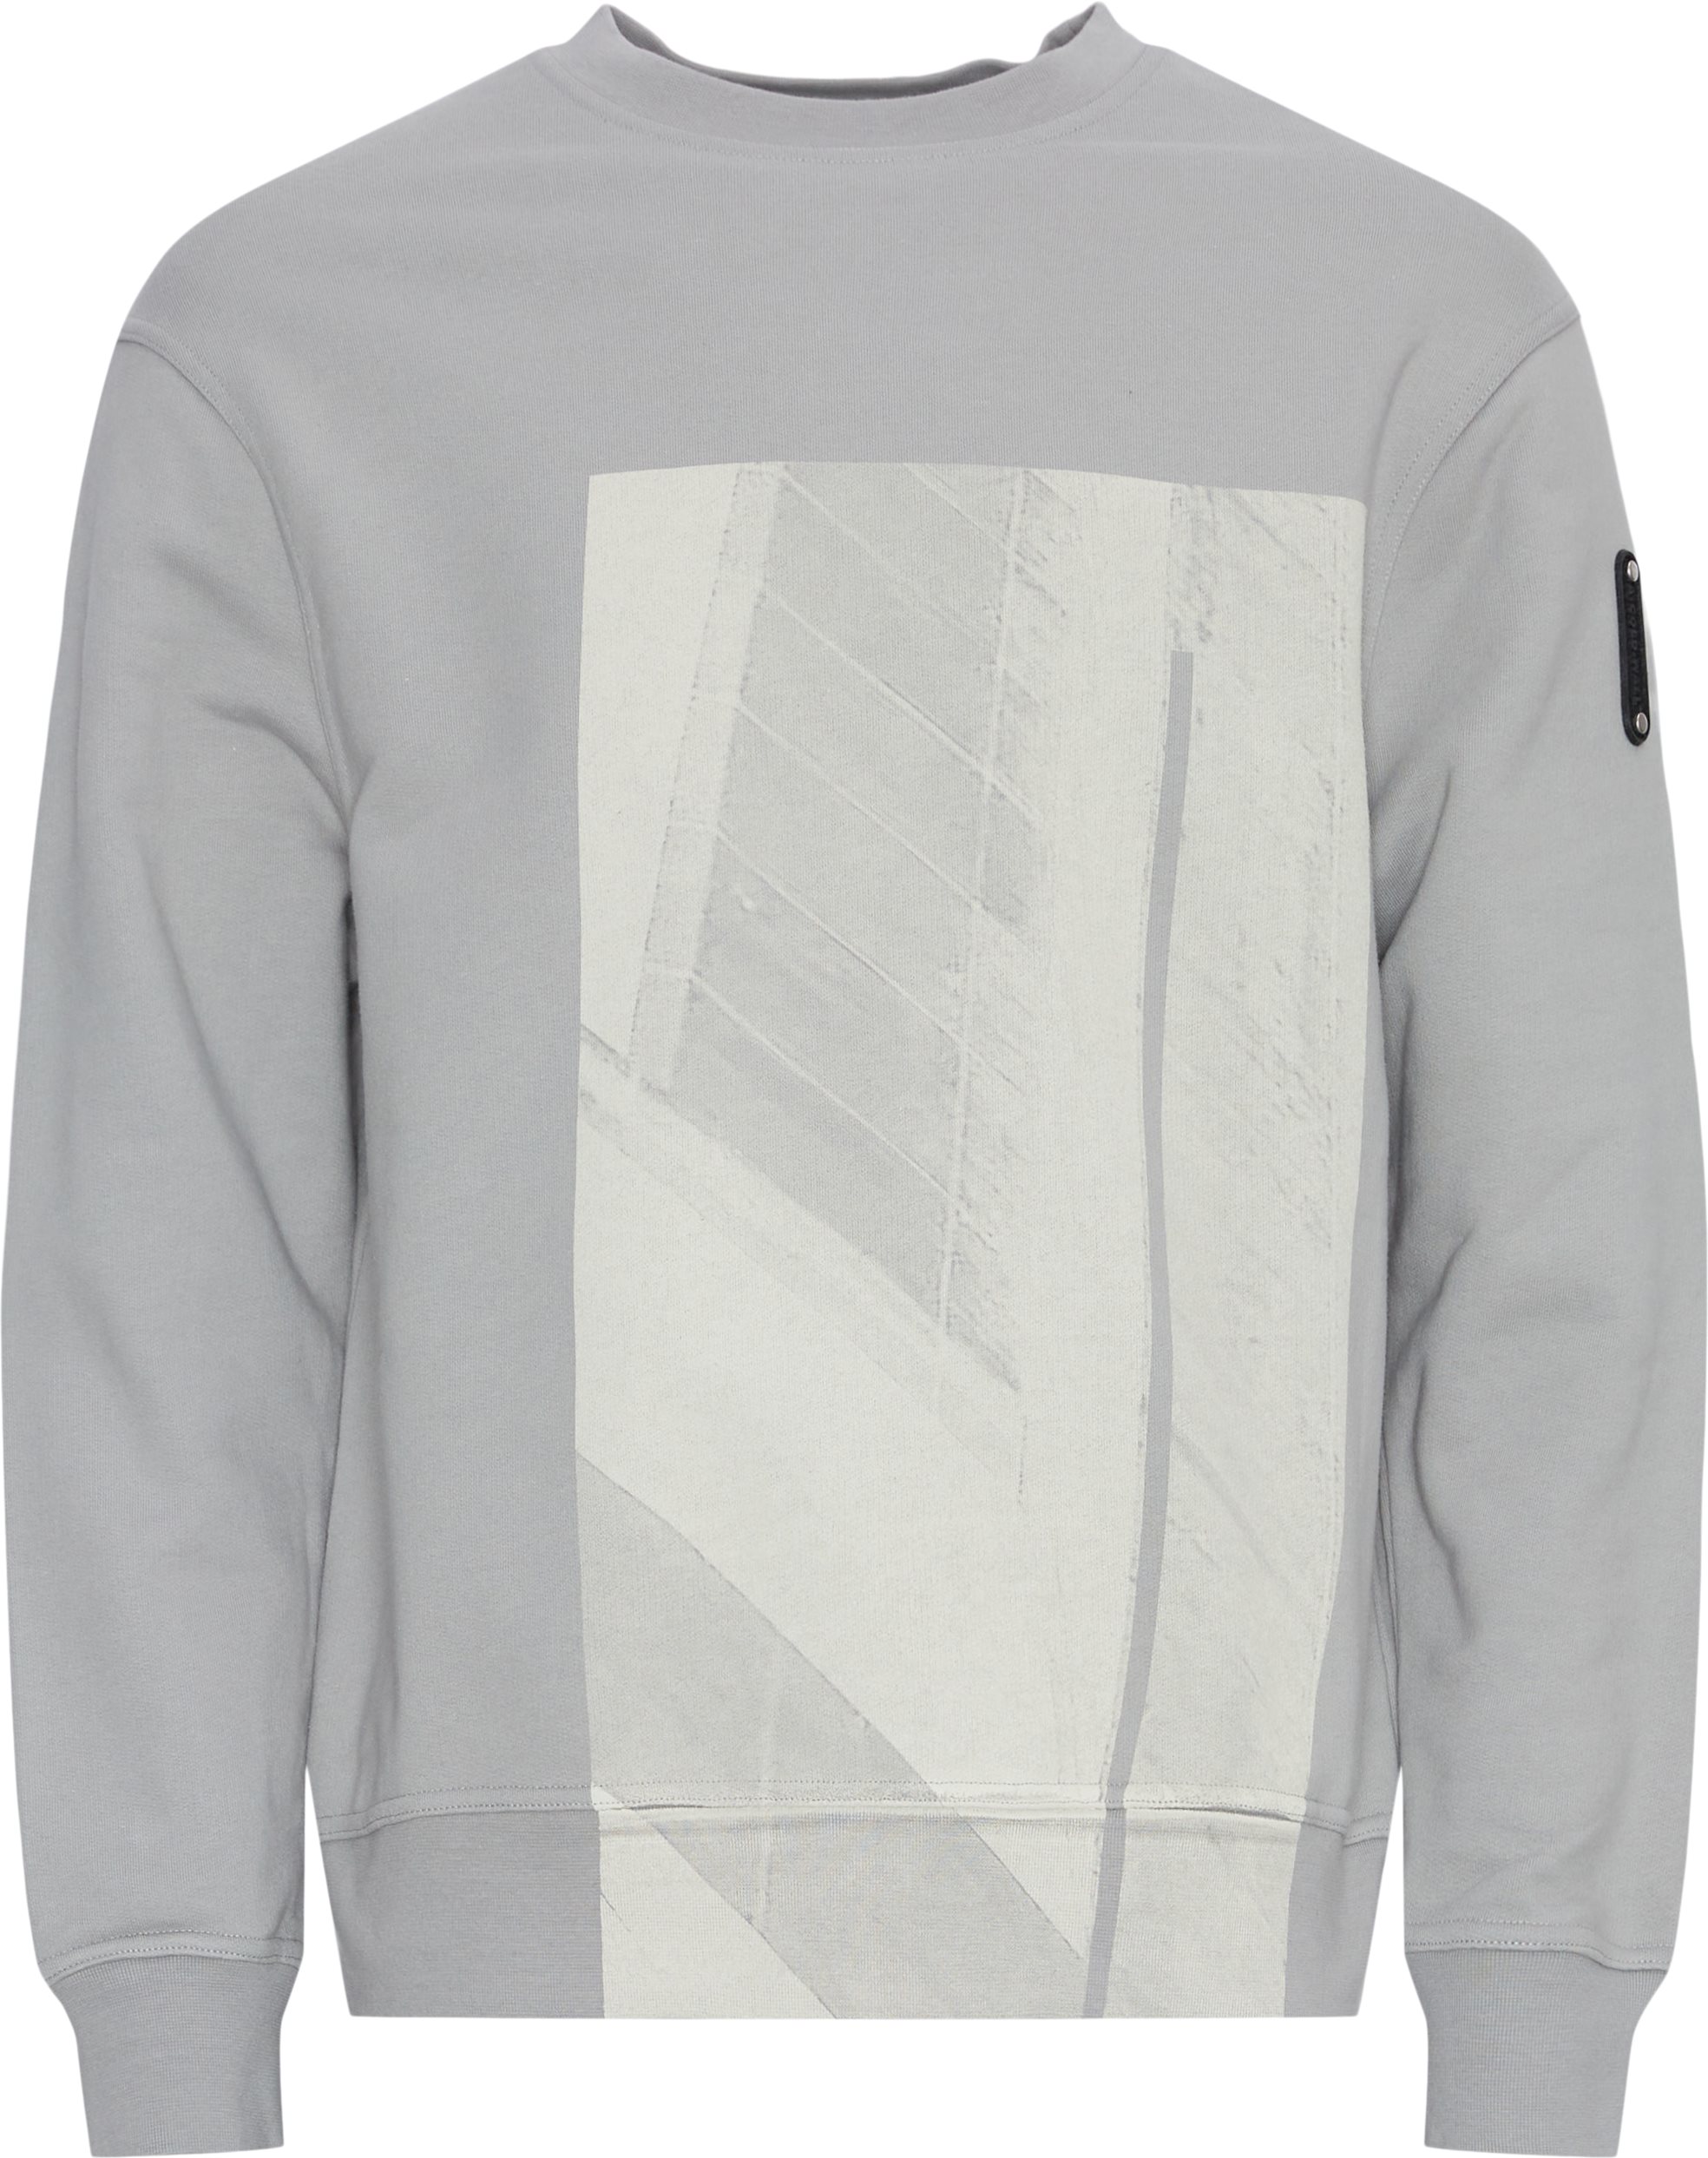 A-COLD-WALL* Sweatshirts ACWMW188 Grey